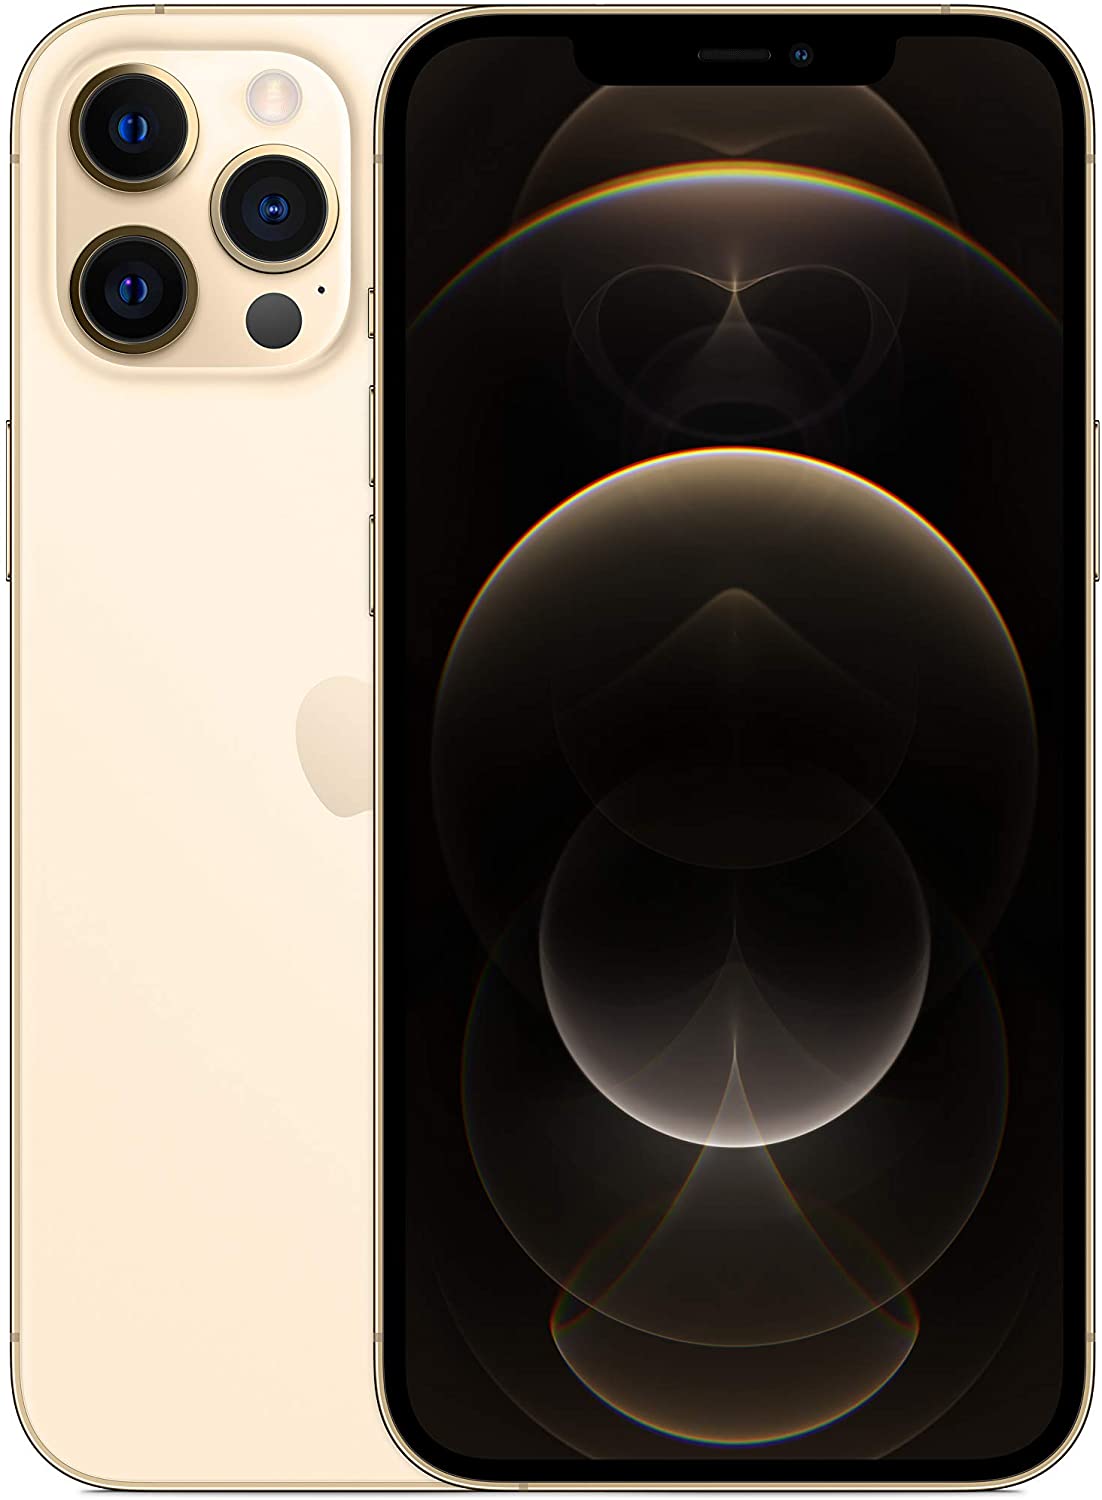 Protector Pantalla Cristal Templado iPhone 12 Pro Max Fullscreen Negra